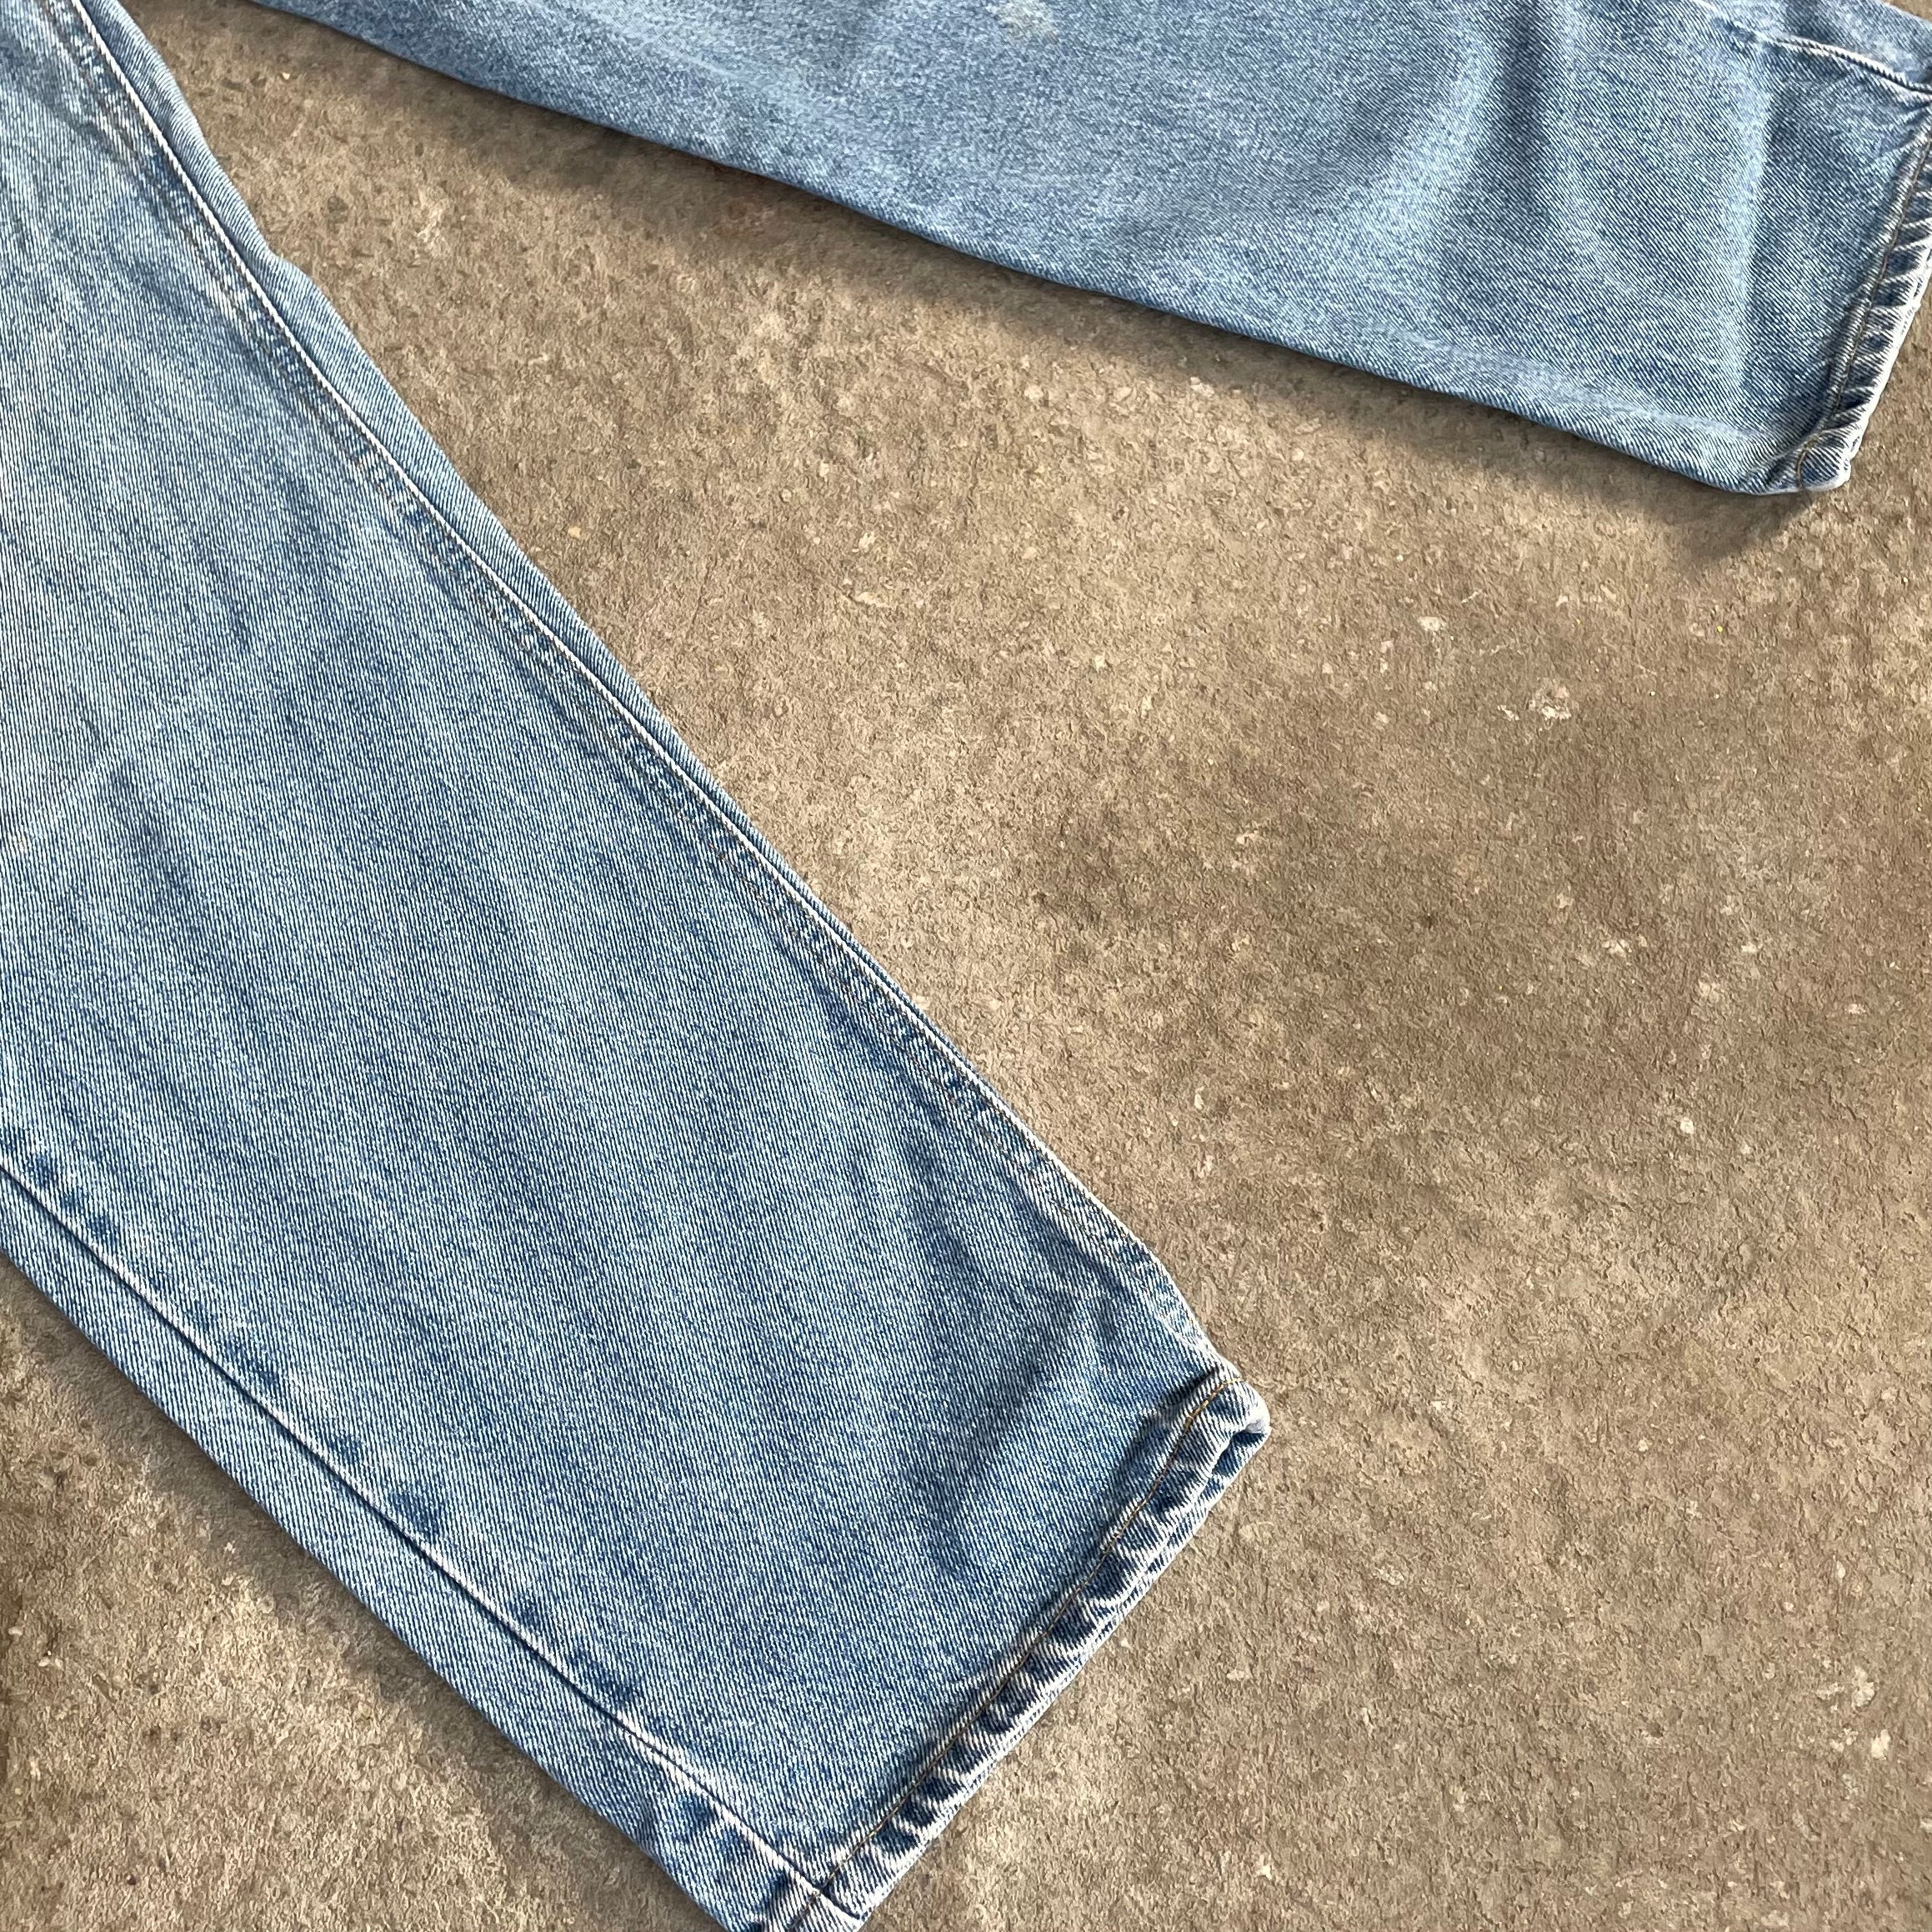 Carhartt jeans Stl 38x30